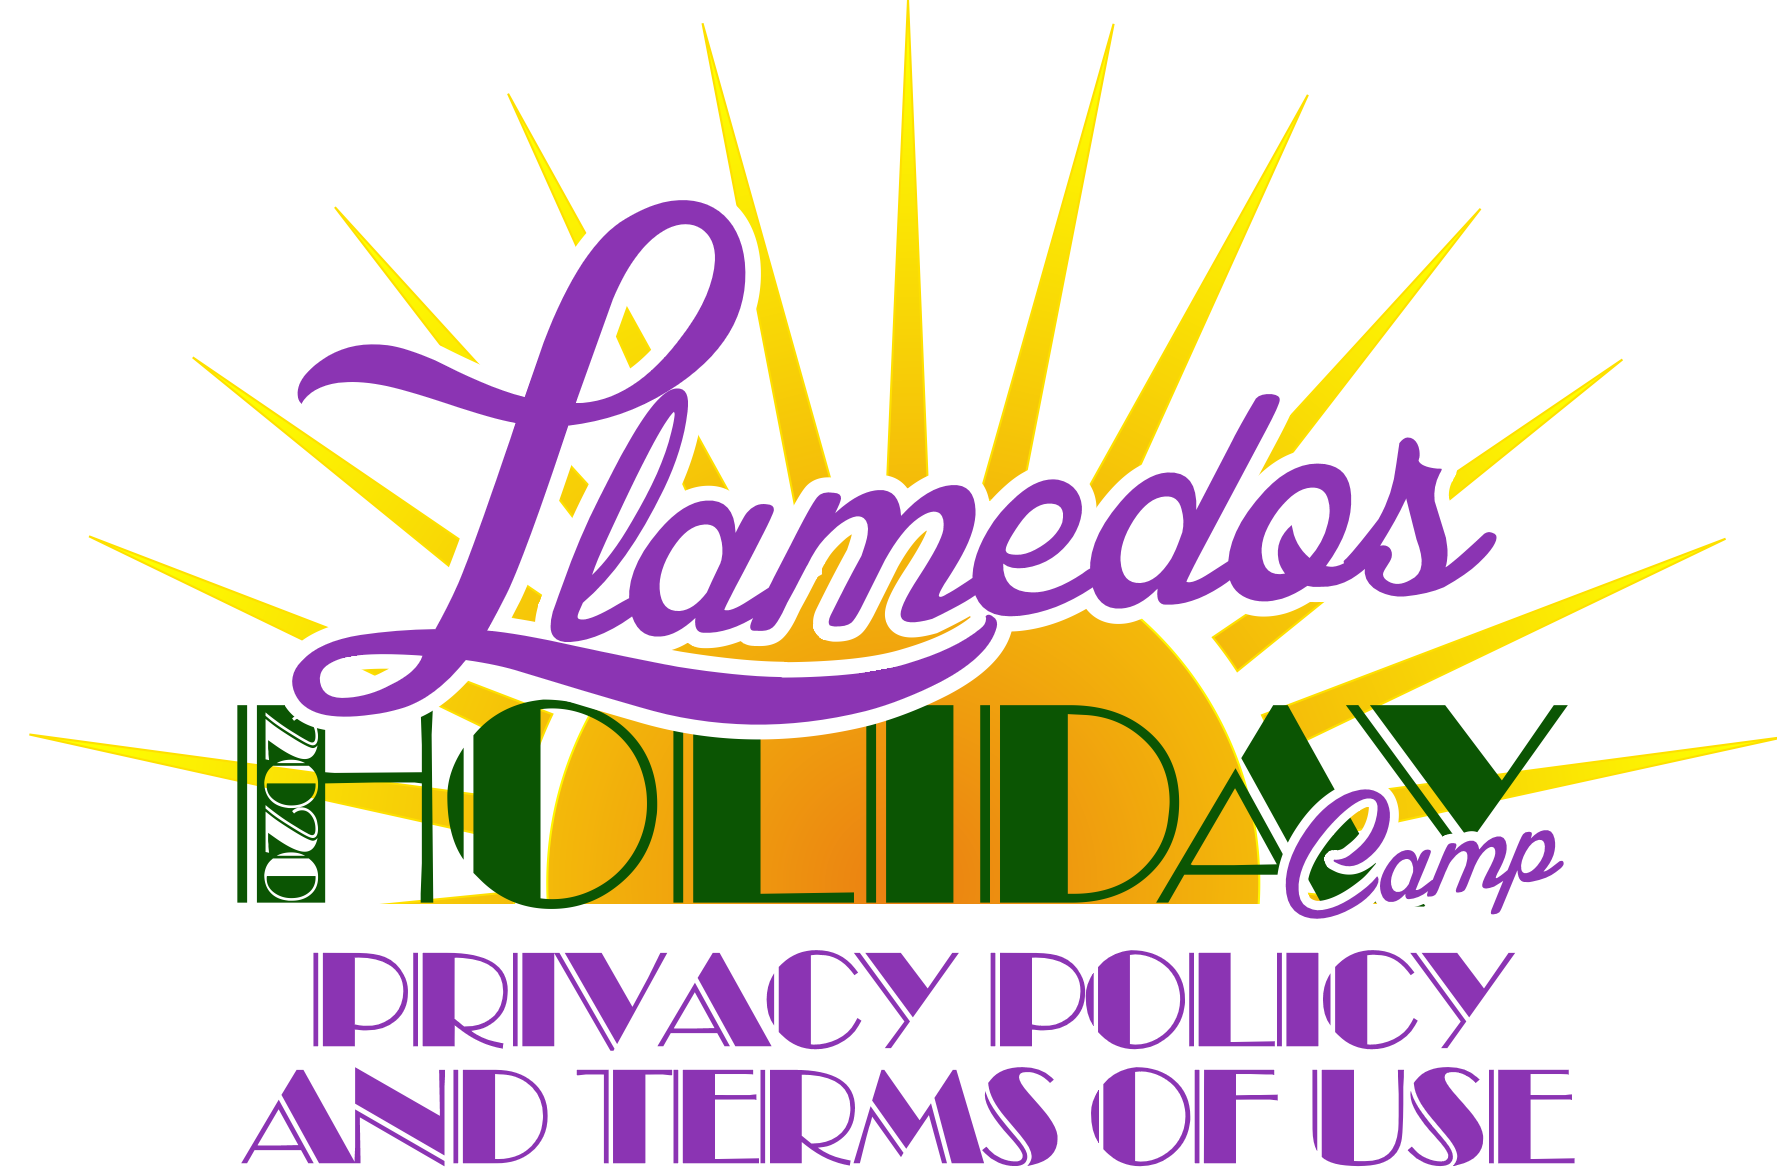 Llamedos Holiday Camp Privacy Policy